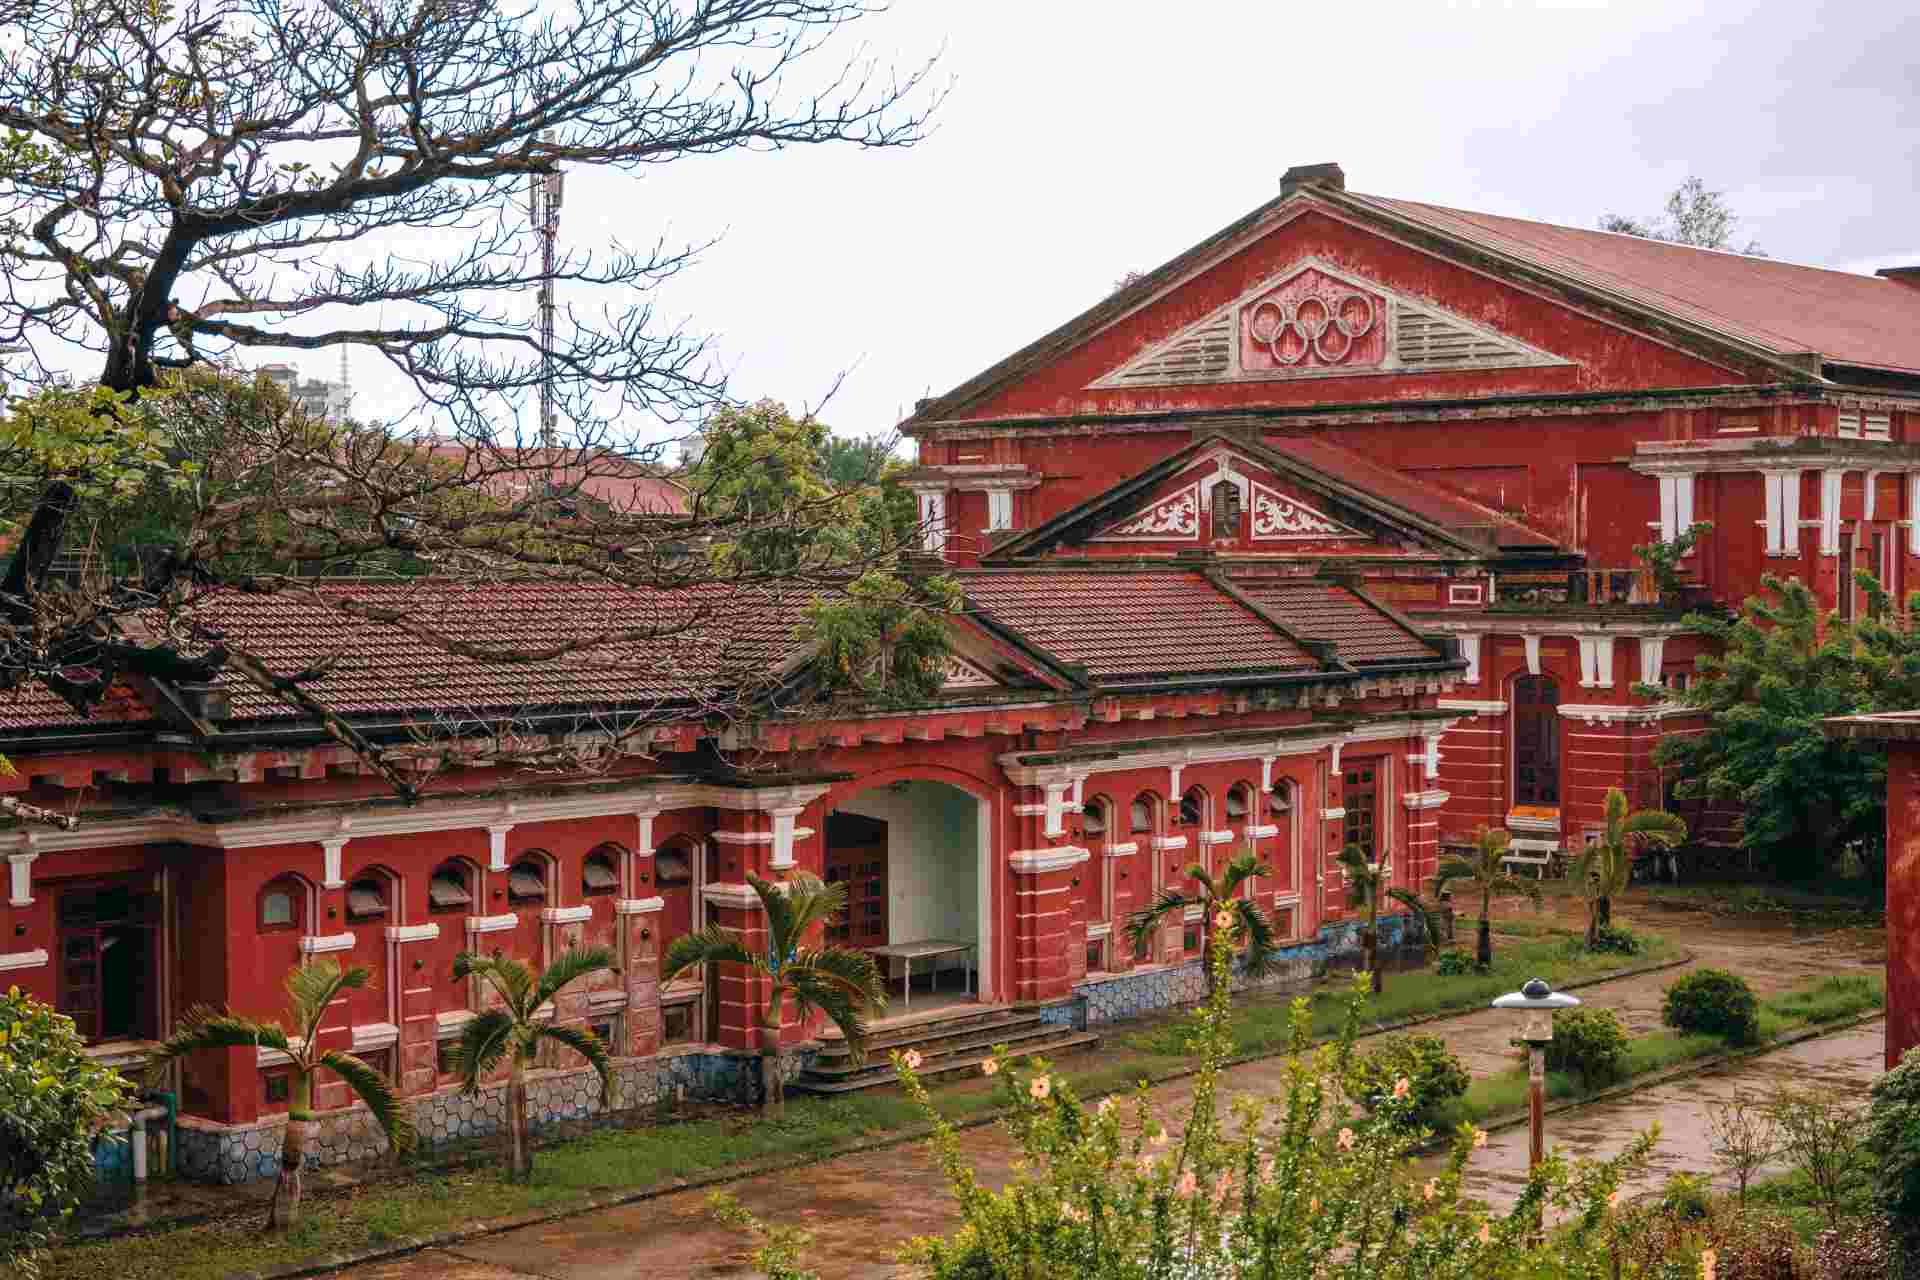 Trường Quốc học là di sản kiến trúc mang đậm dấu ấn của đất nước Pháp vào đầu thế kỉ XX và là một trong những ngôi trường đẹp nhất Việt Nam. Ảnh: Trường Bùi. 